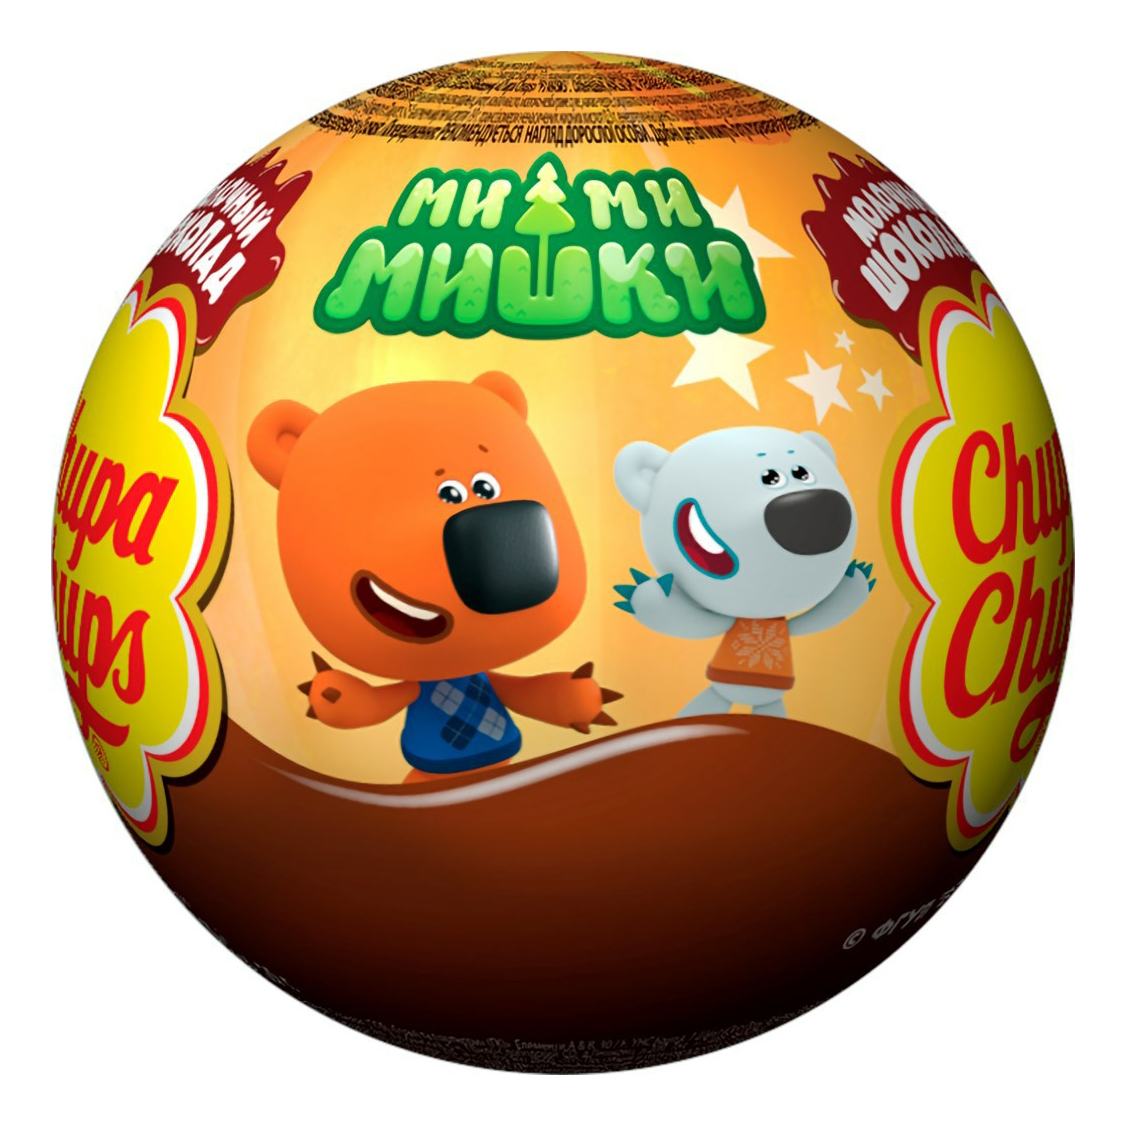 Шоколад фигурный Chupa Chups шар молочный с игрушкой 20 г